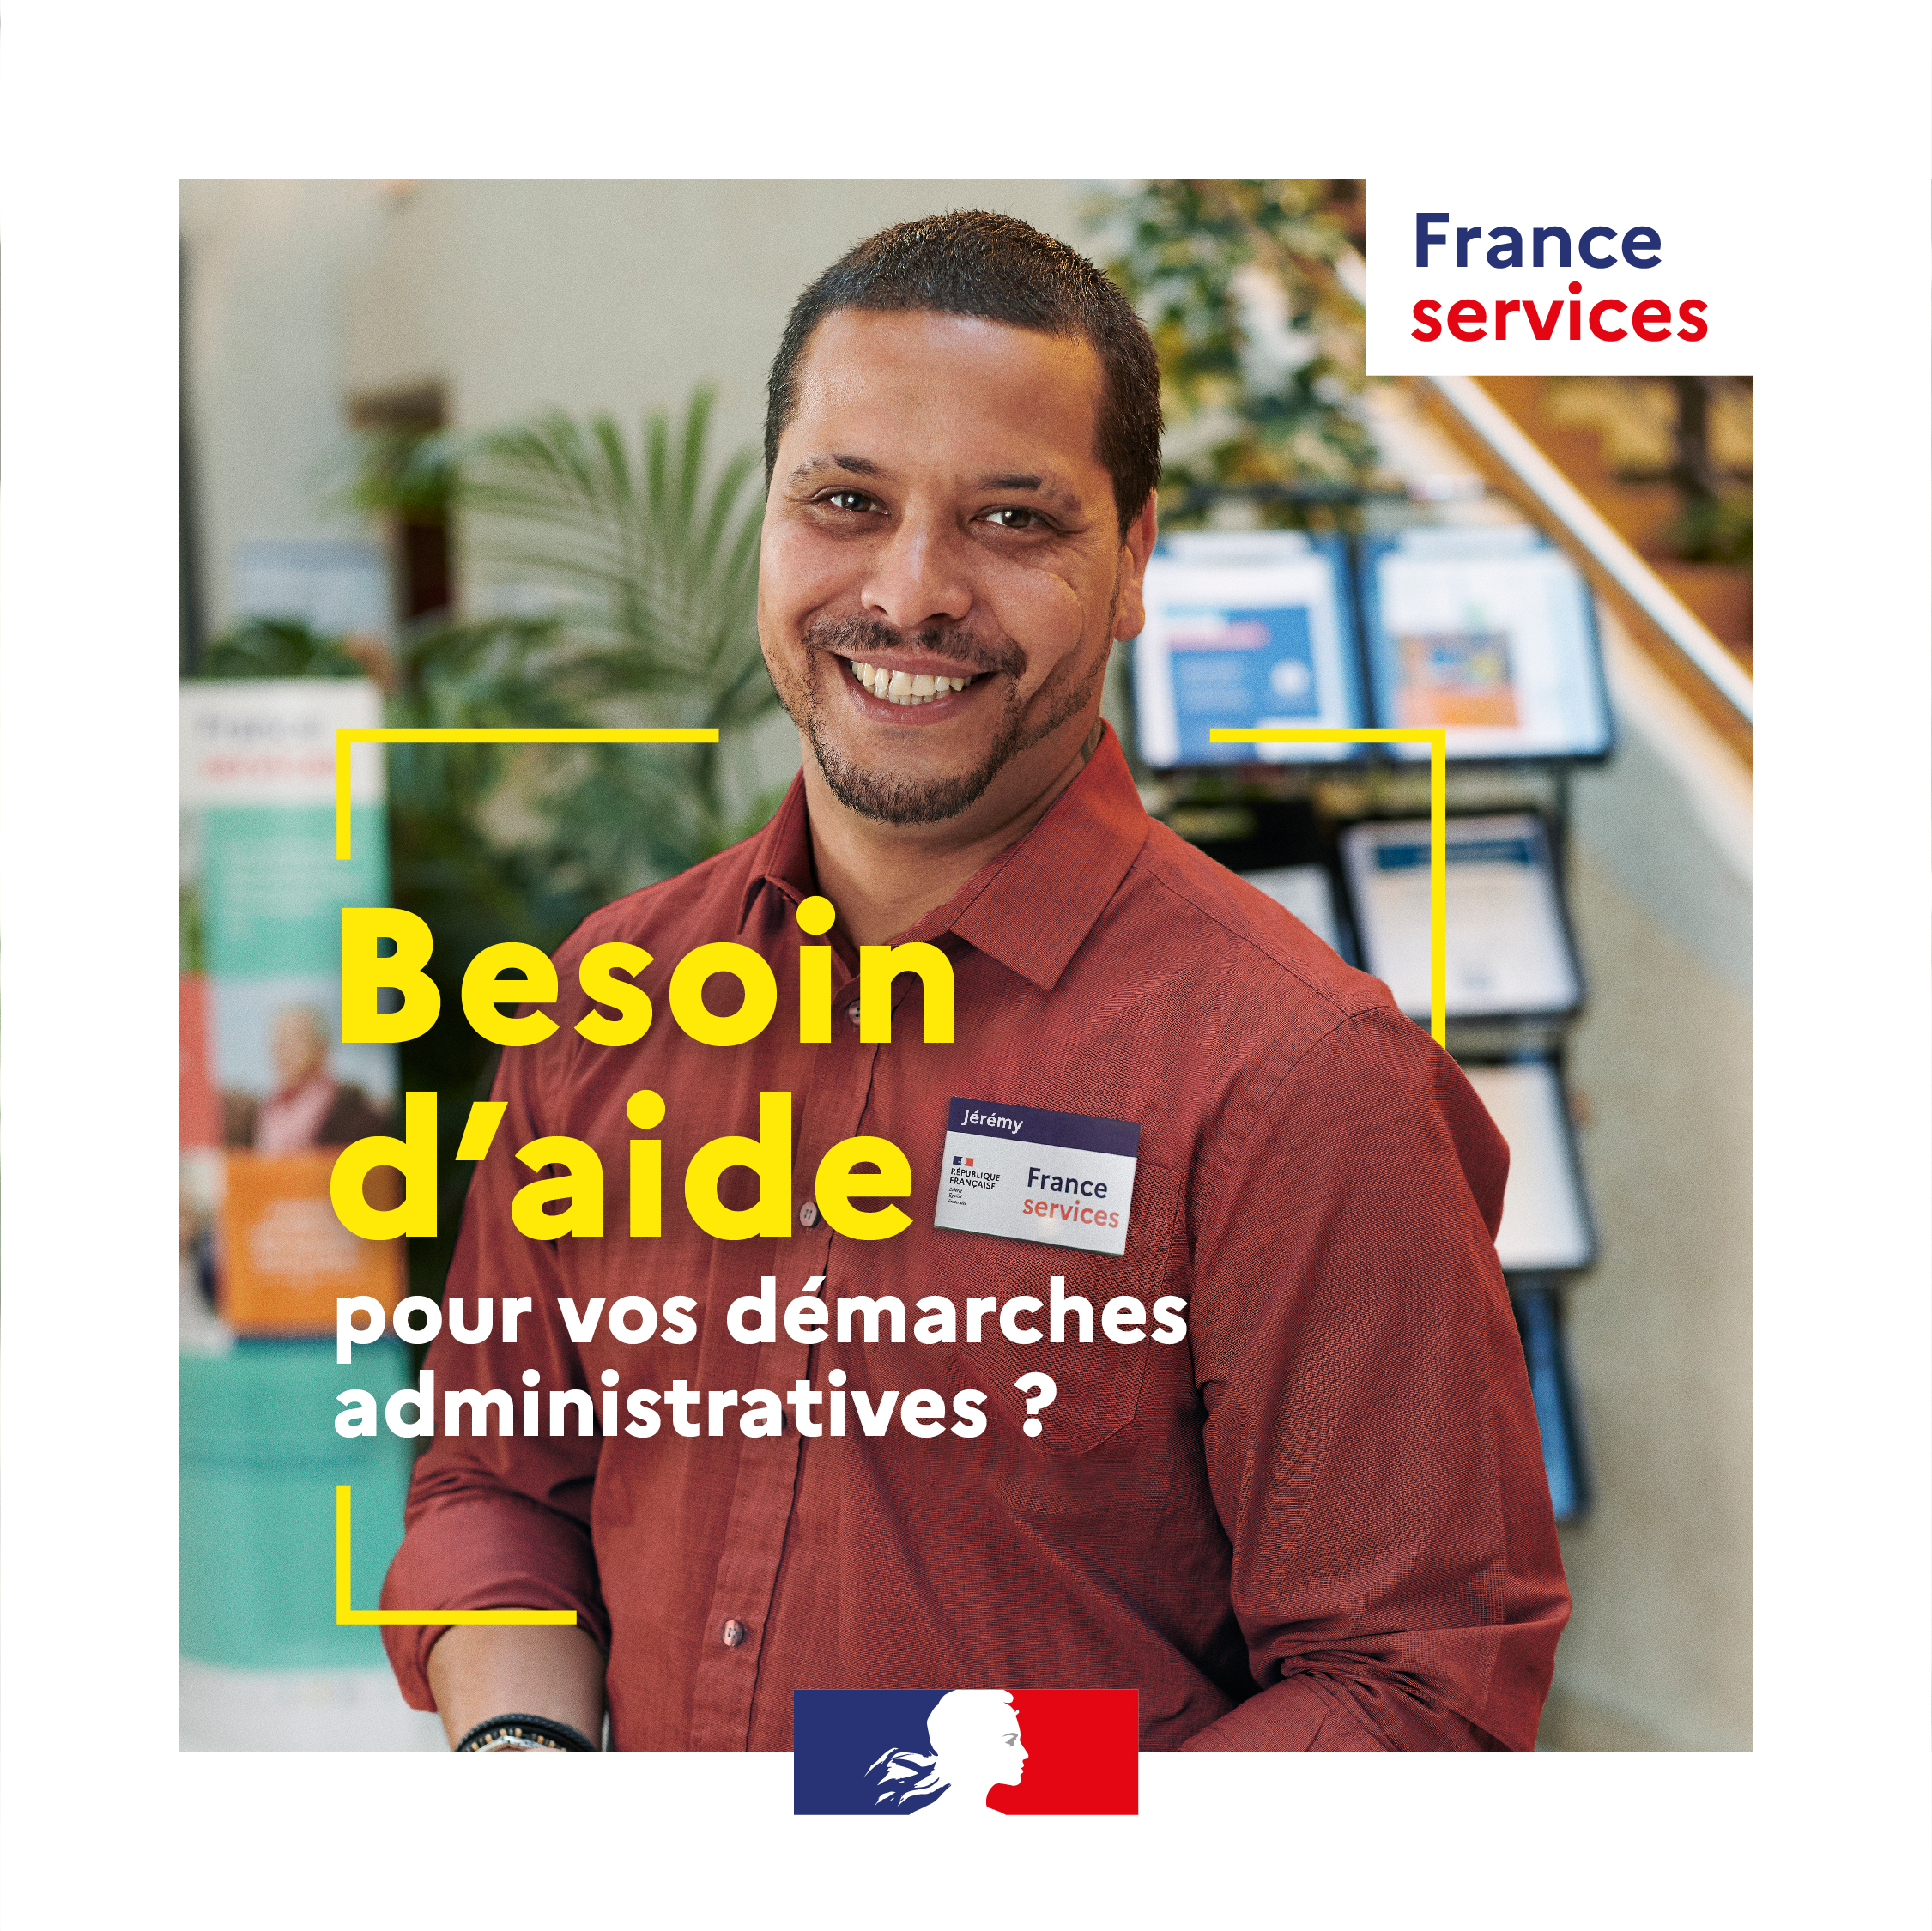 France services en Aveyron